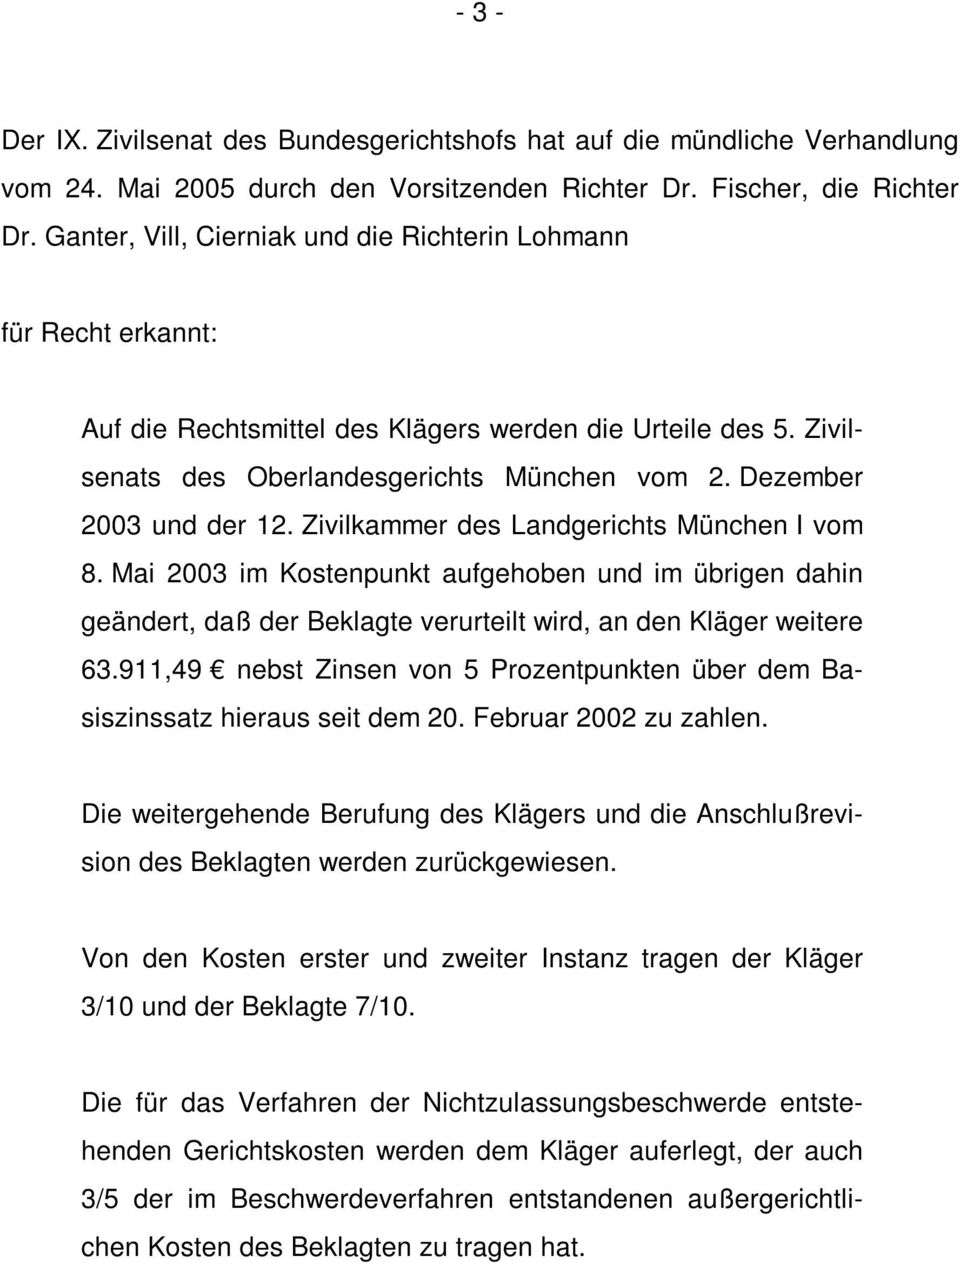 Dezember 2003 und der 12. Zivilkammer des Landgerichts München I vom 8. Mai 2003 im Kostenpunkt aufgehoben und im übrigen dahin geändert, daß der Beklagte verurteilt wird, an den Kläger weitere 63.